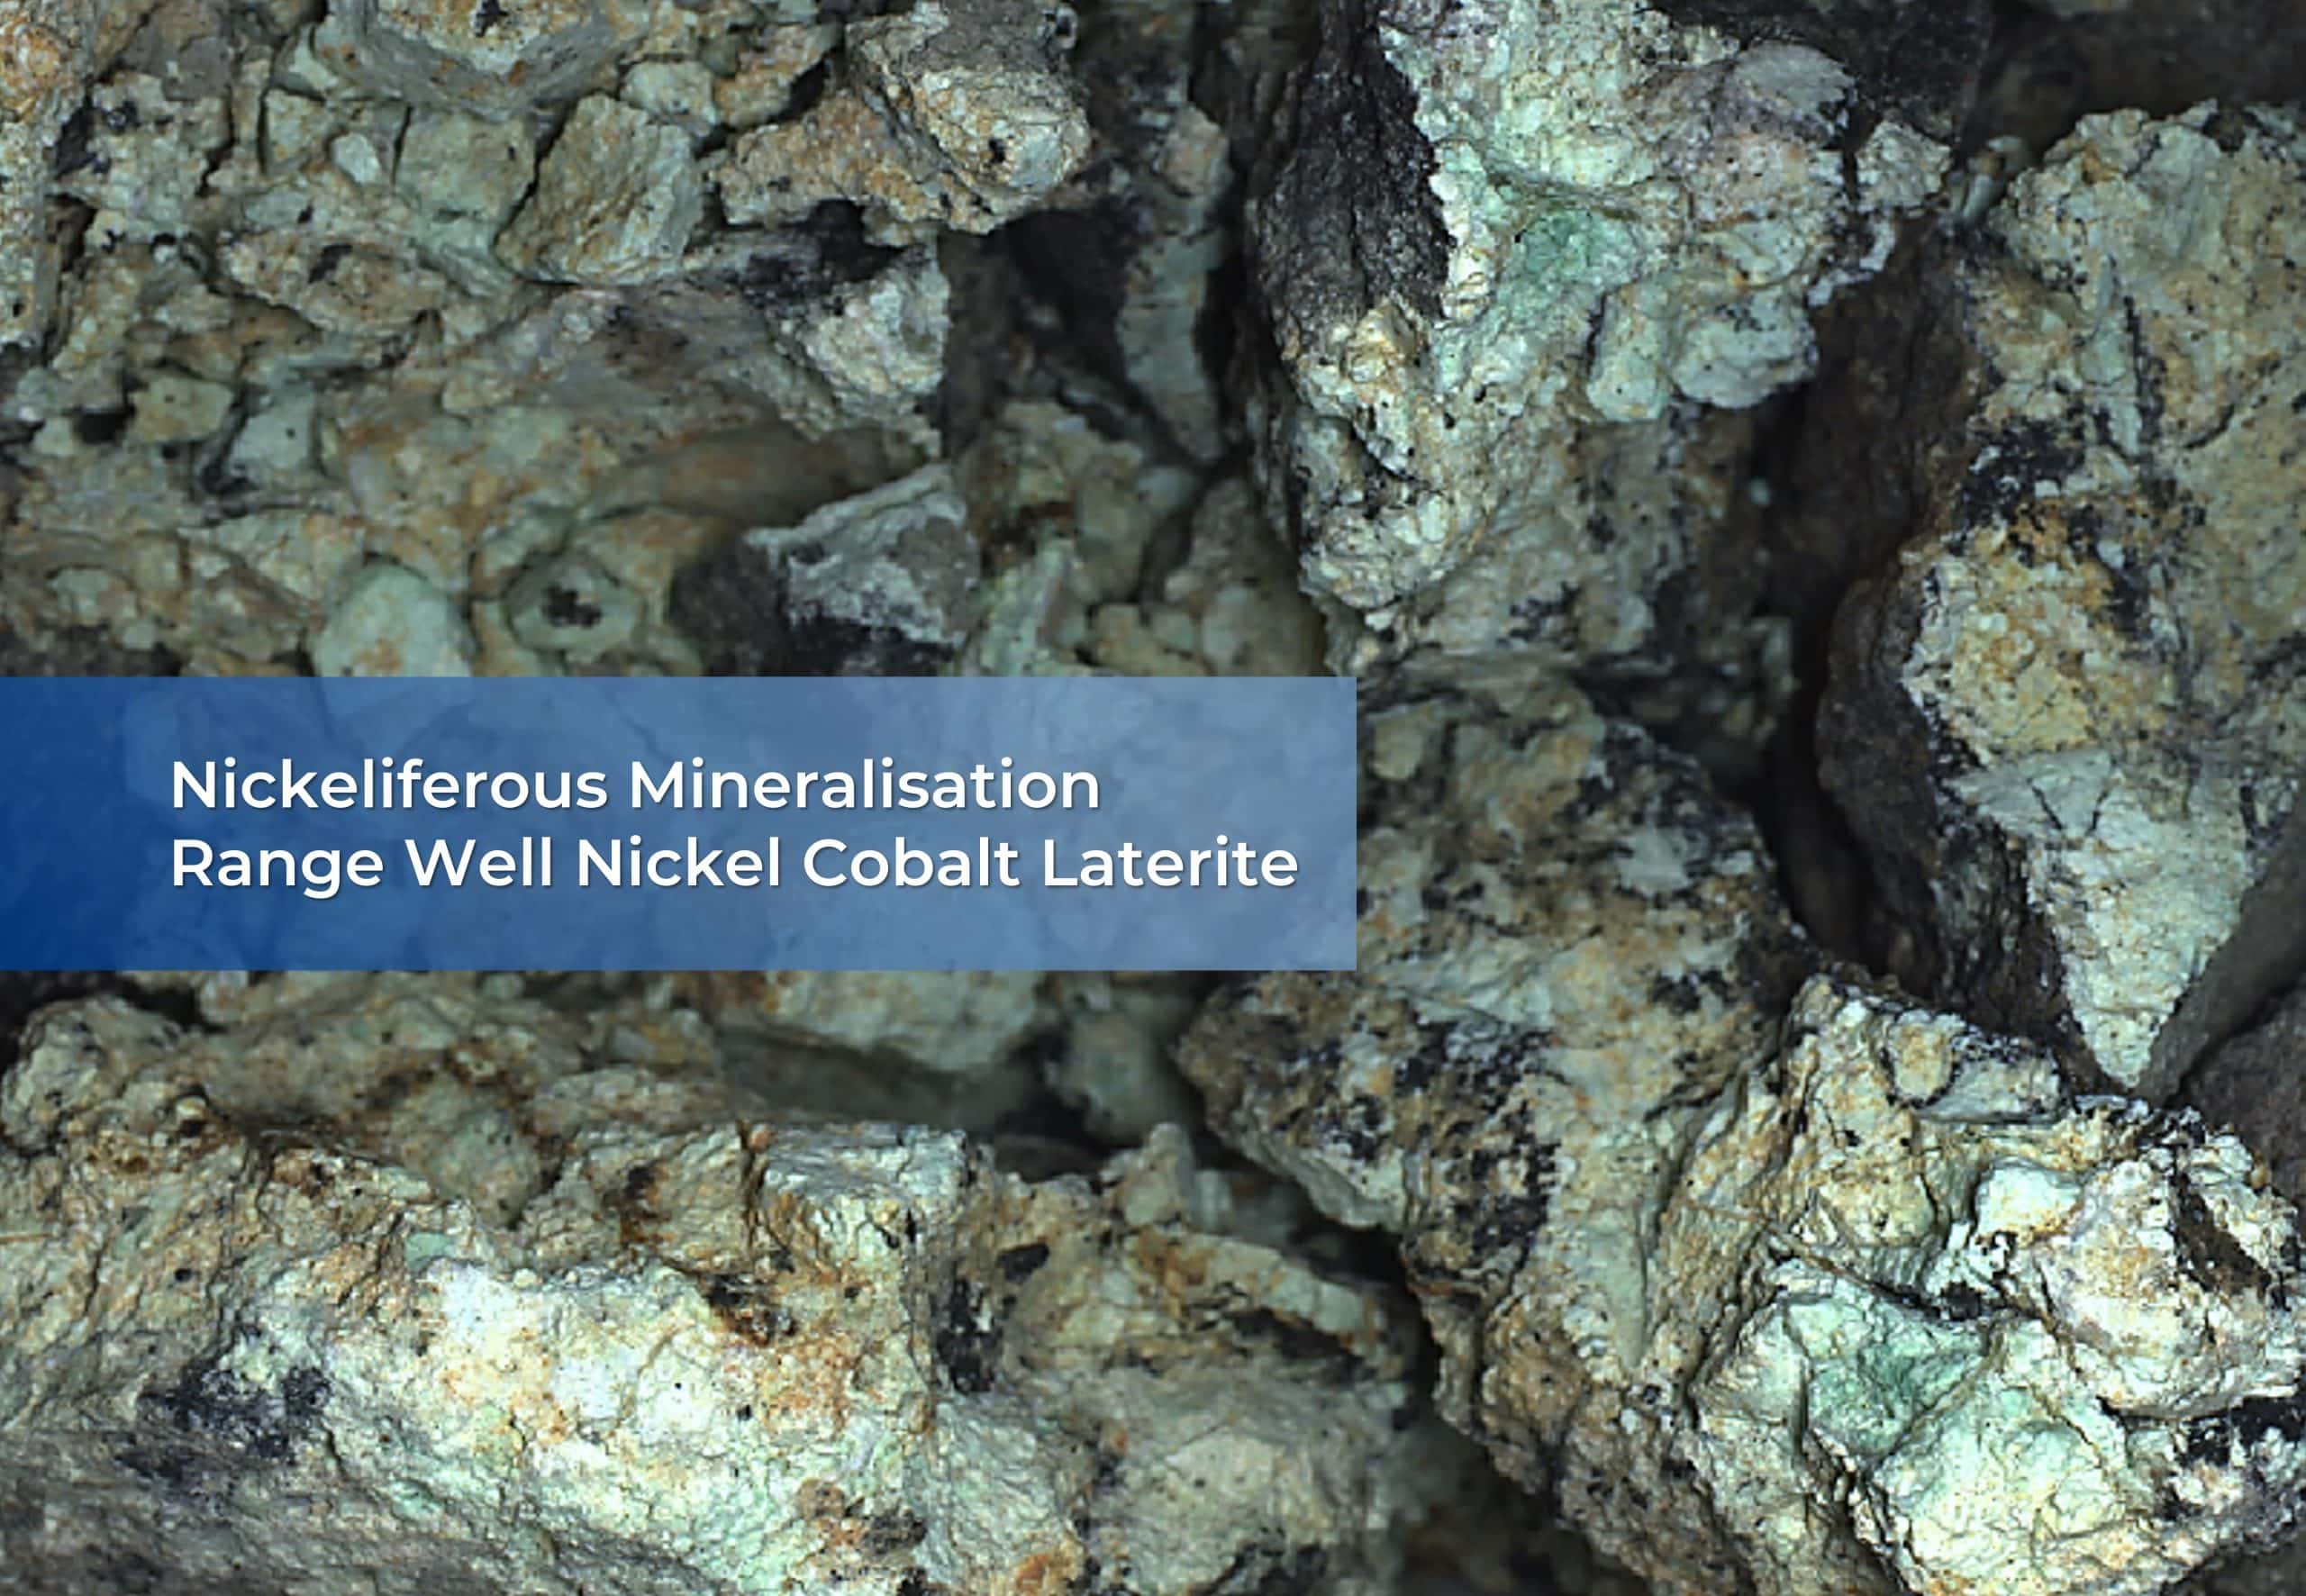 Nickeliferous Mineralisation min scaled